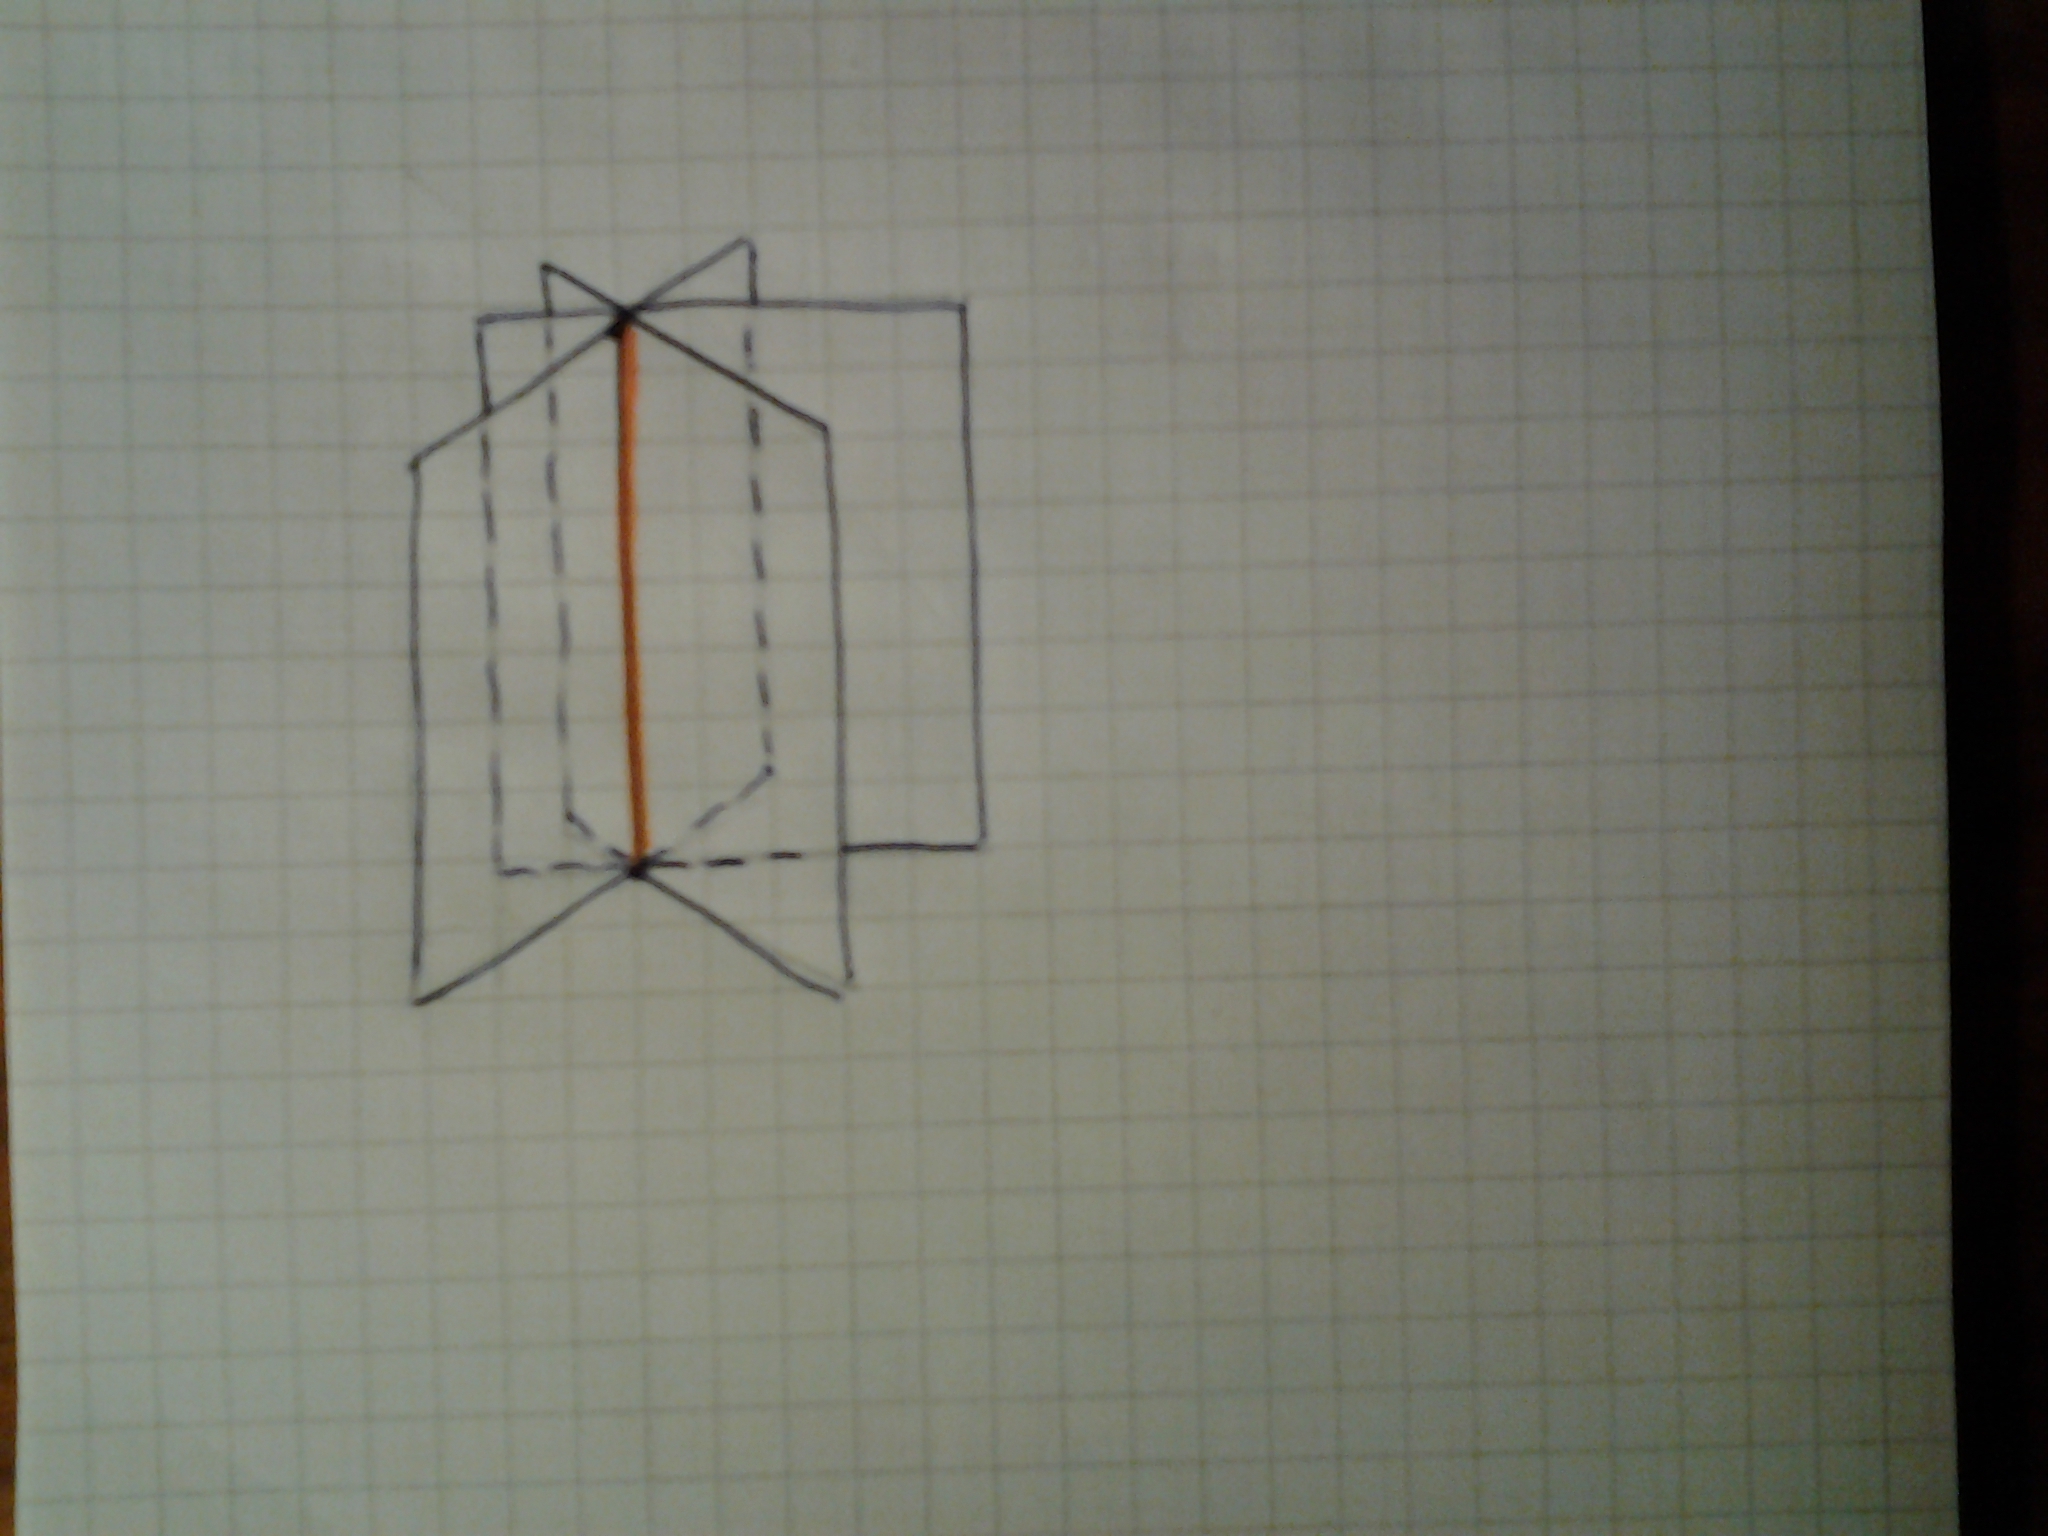 Как изобразить 3 плоскости. Три плоскости пересекающиеся по общей прямой. Три плоскости пересекаются по прямой. Изобразите 3 плоскости пересекающиеся по общей прямой. Пересечение 3 плоскостей.